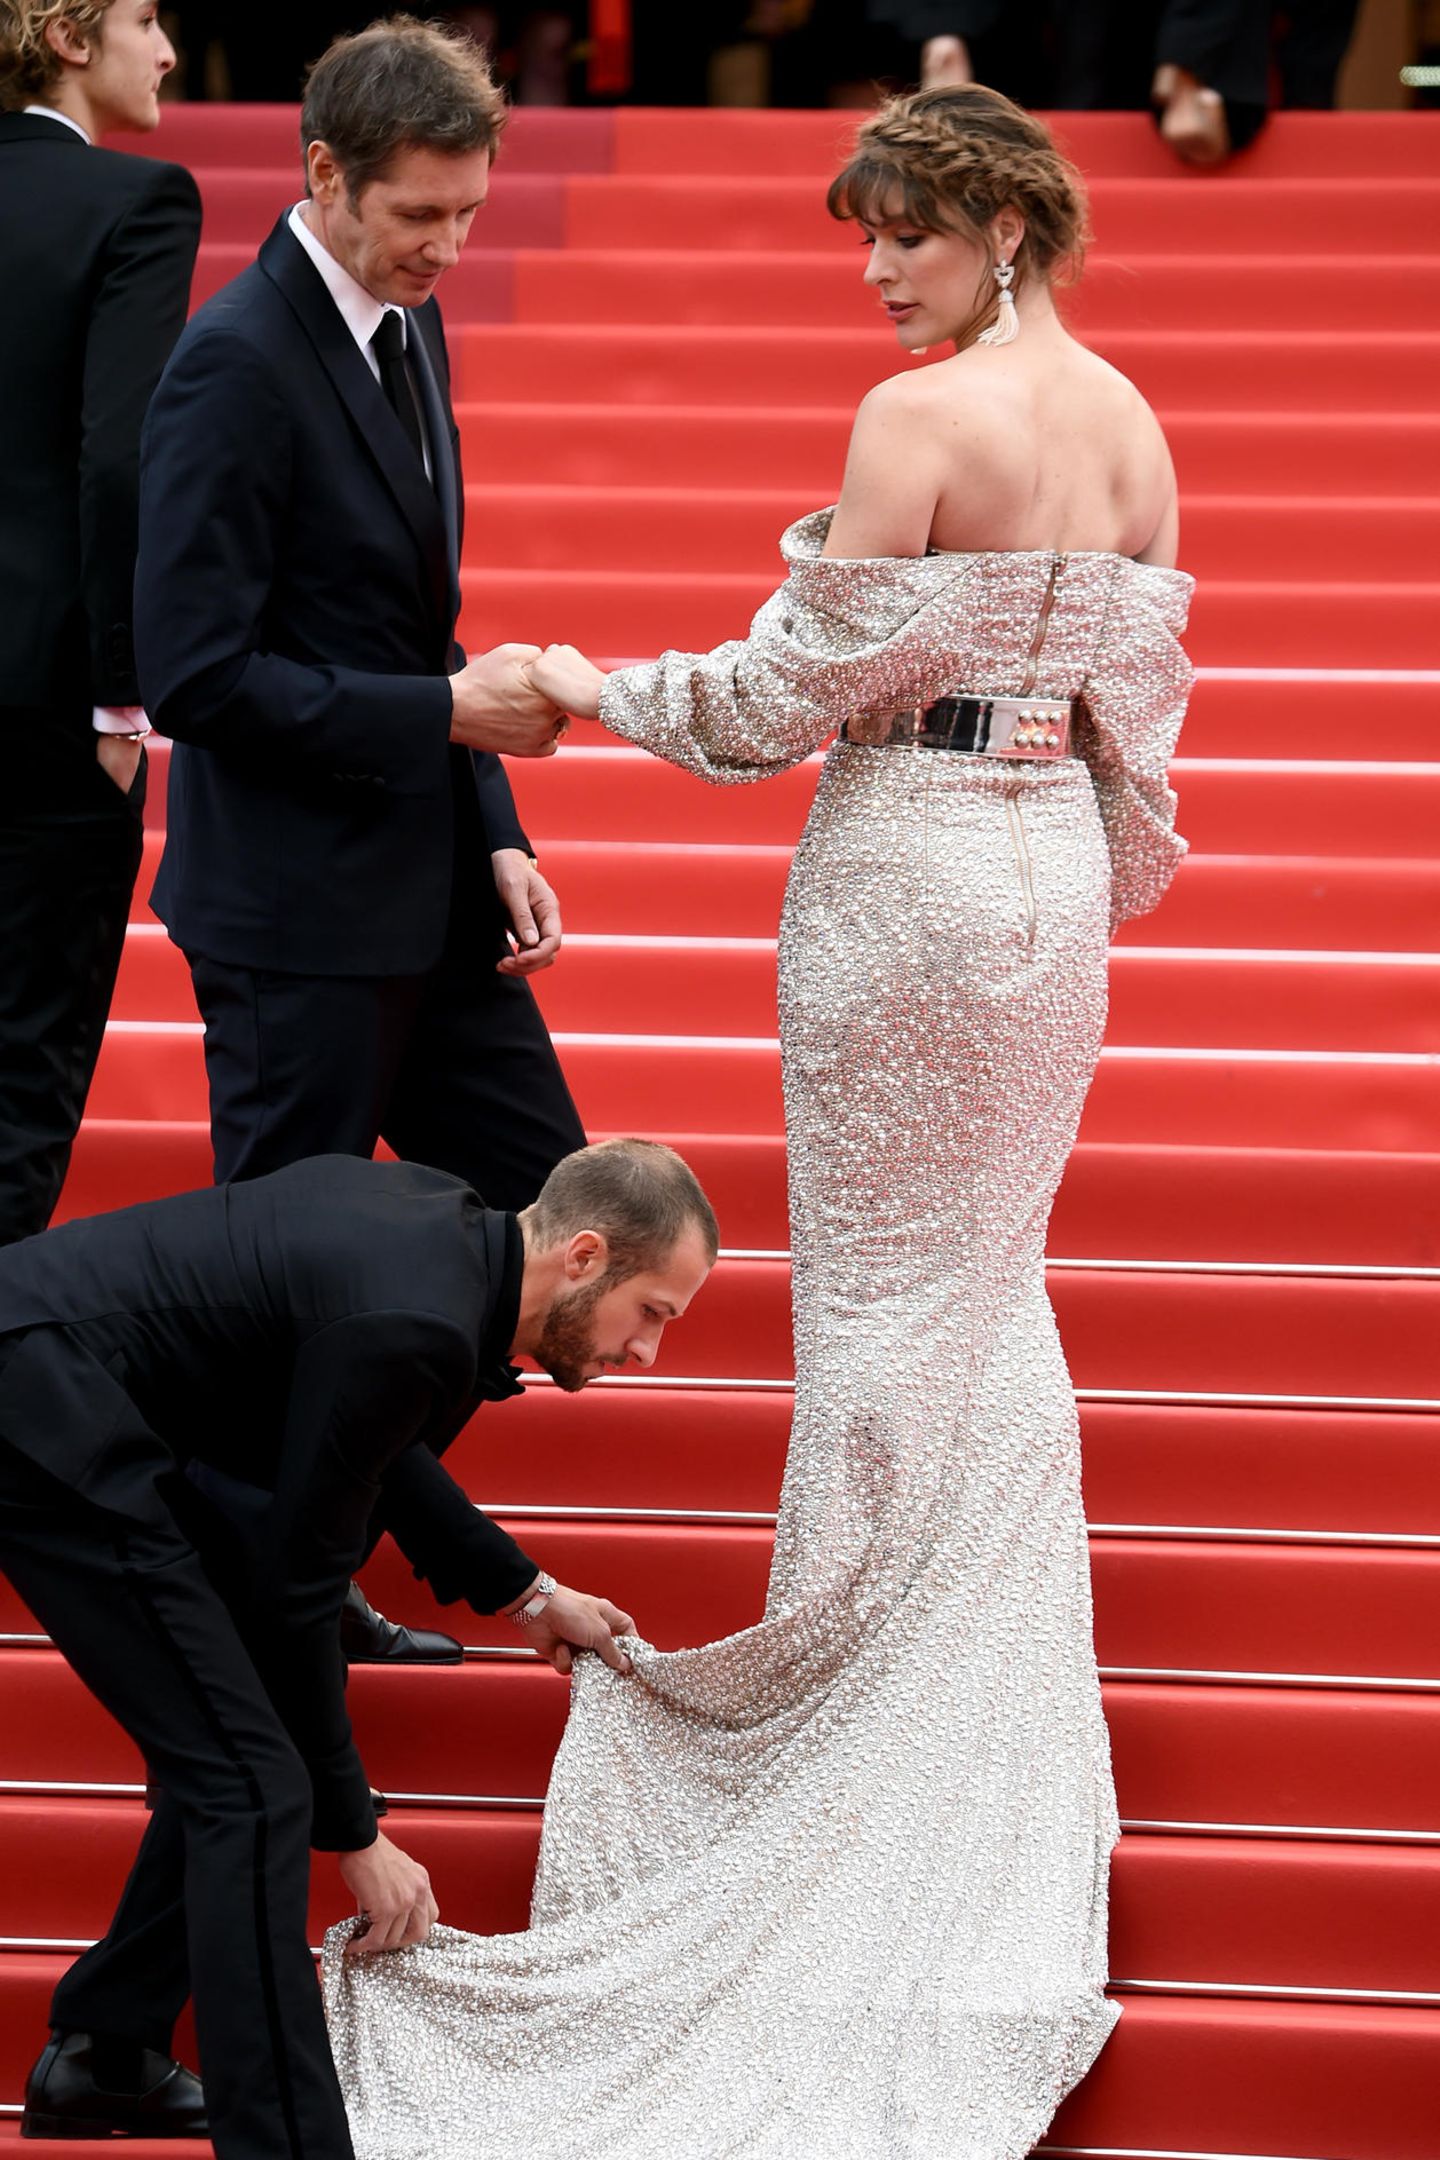 Die Treppen in Cannes haben es in sich. Auch Milla Jovovich benötigt Hilfe. Und das von gleich zwei Assistenten.